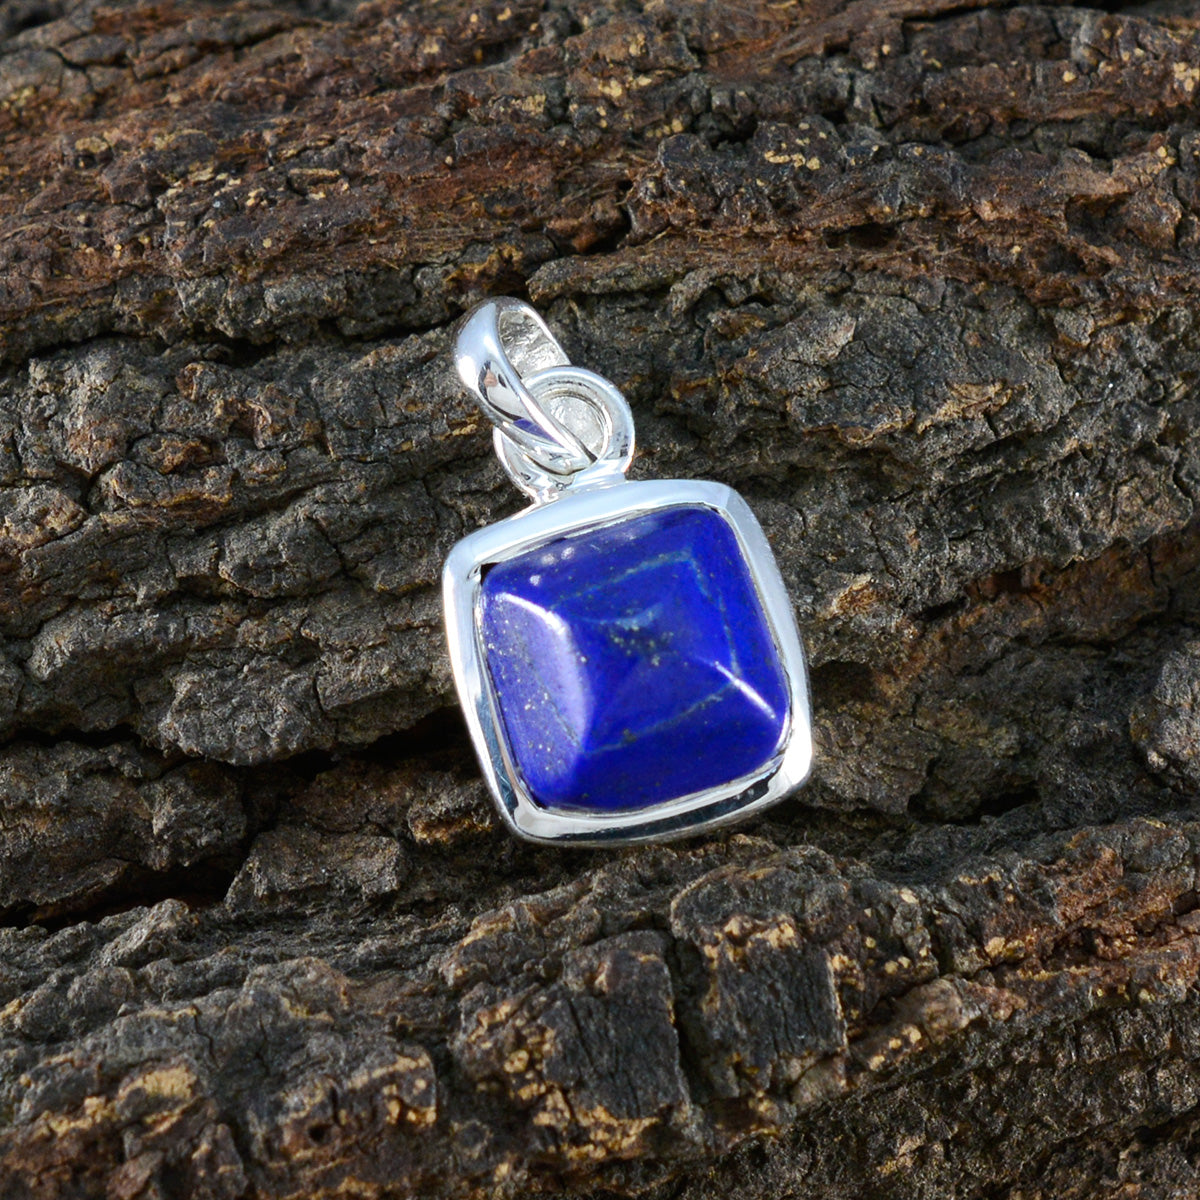 Серебряный кулон из стерлингового серебра с настоящим драгоценным камнем Riyo, квадратный граненый, темно-синий, лазурит, подарок для друга